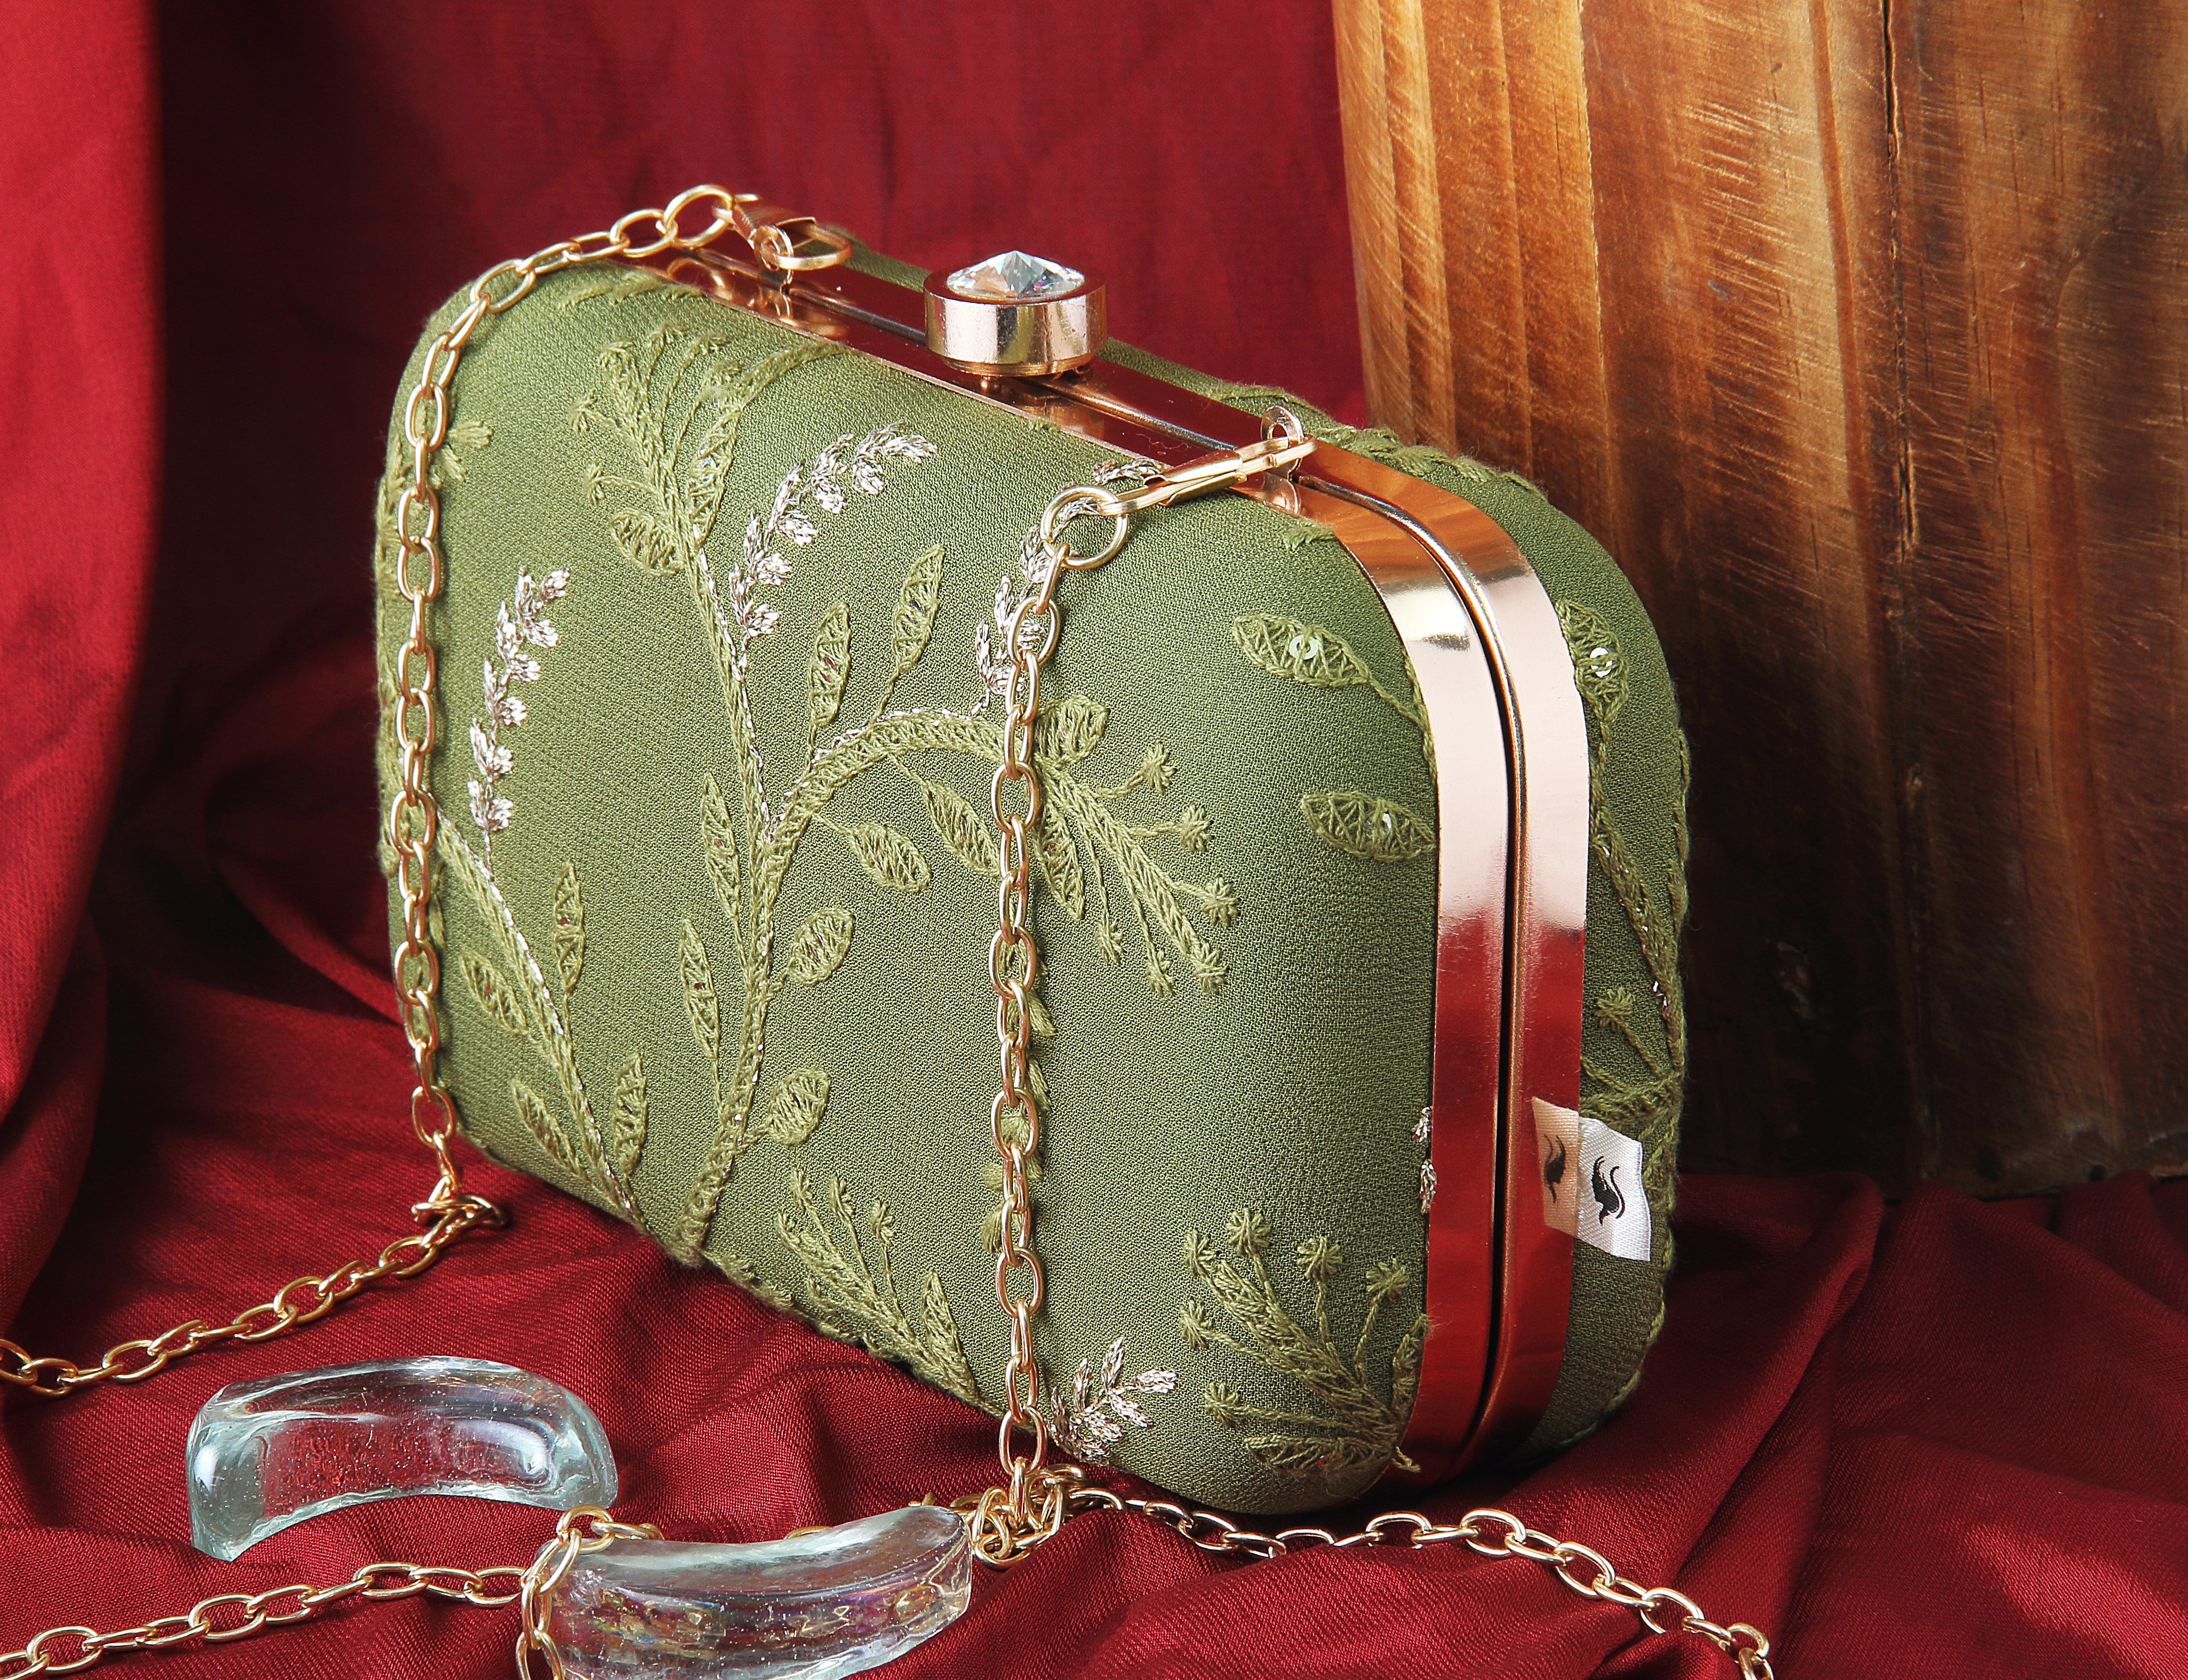 Saadgi embroidered designer olive clutch bag with sling